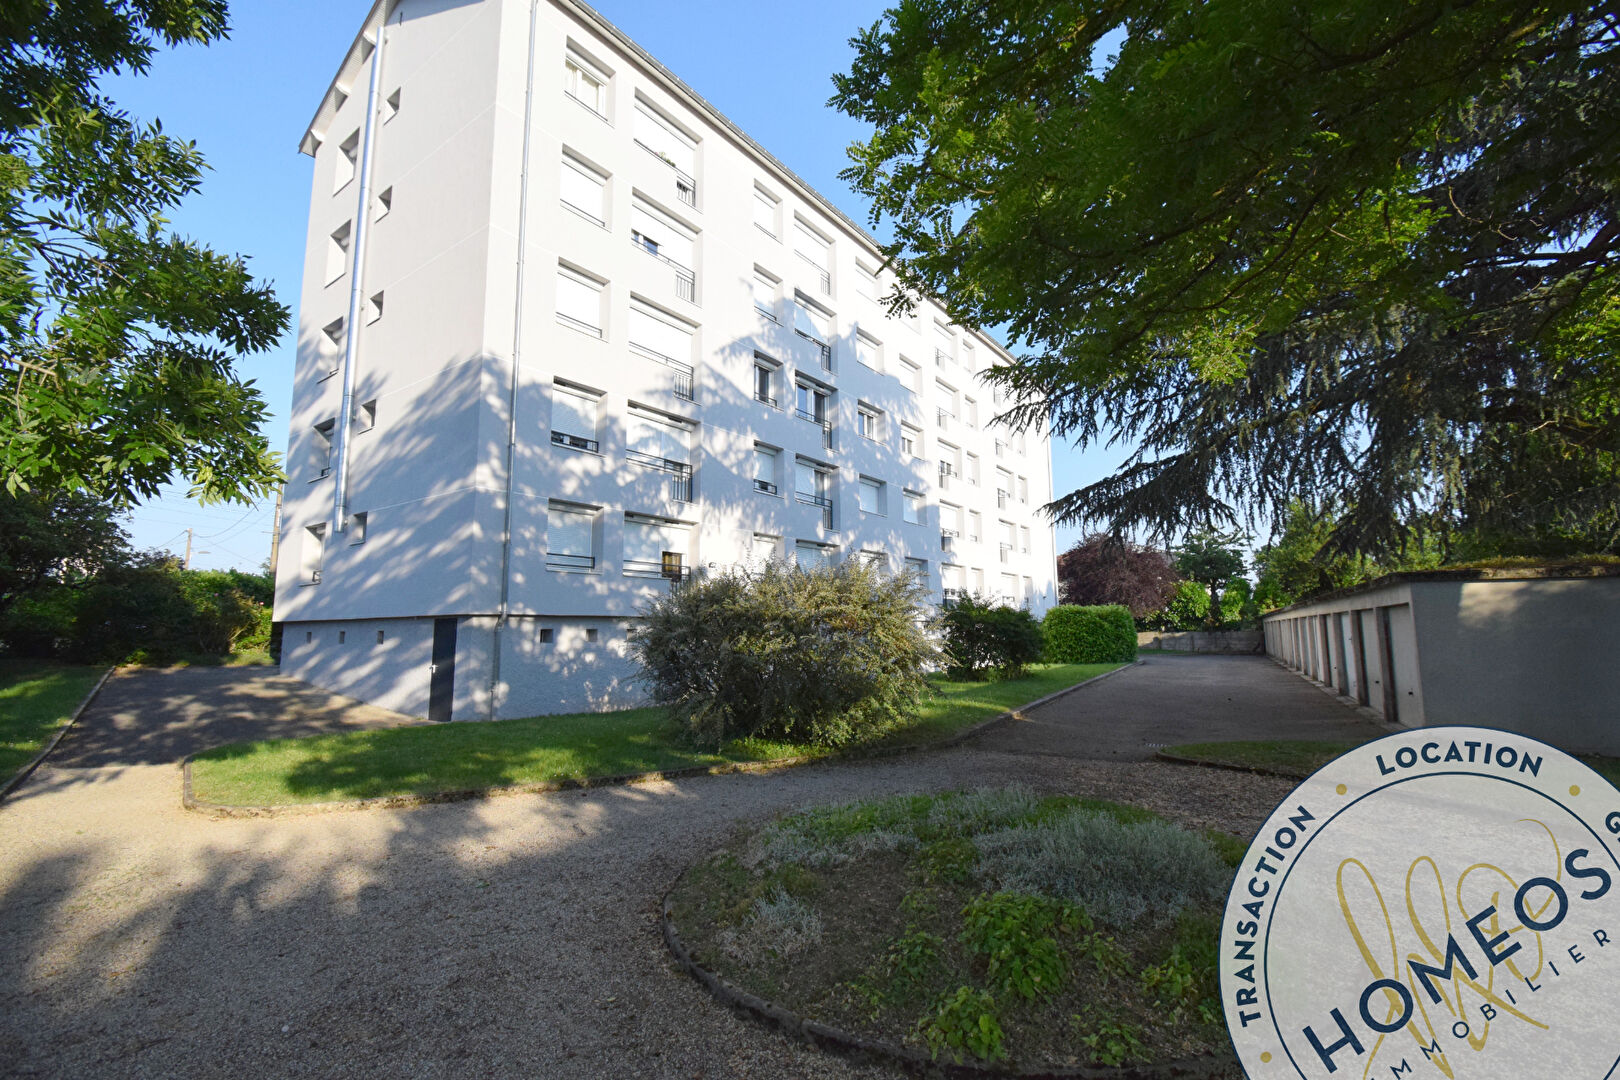 
Appartement Bourg En Bresse 5 pièce(s) 74.70 m2
